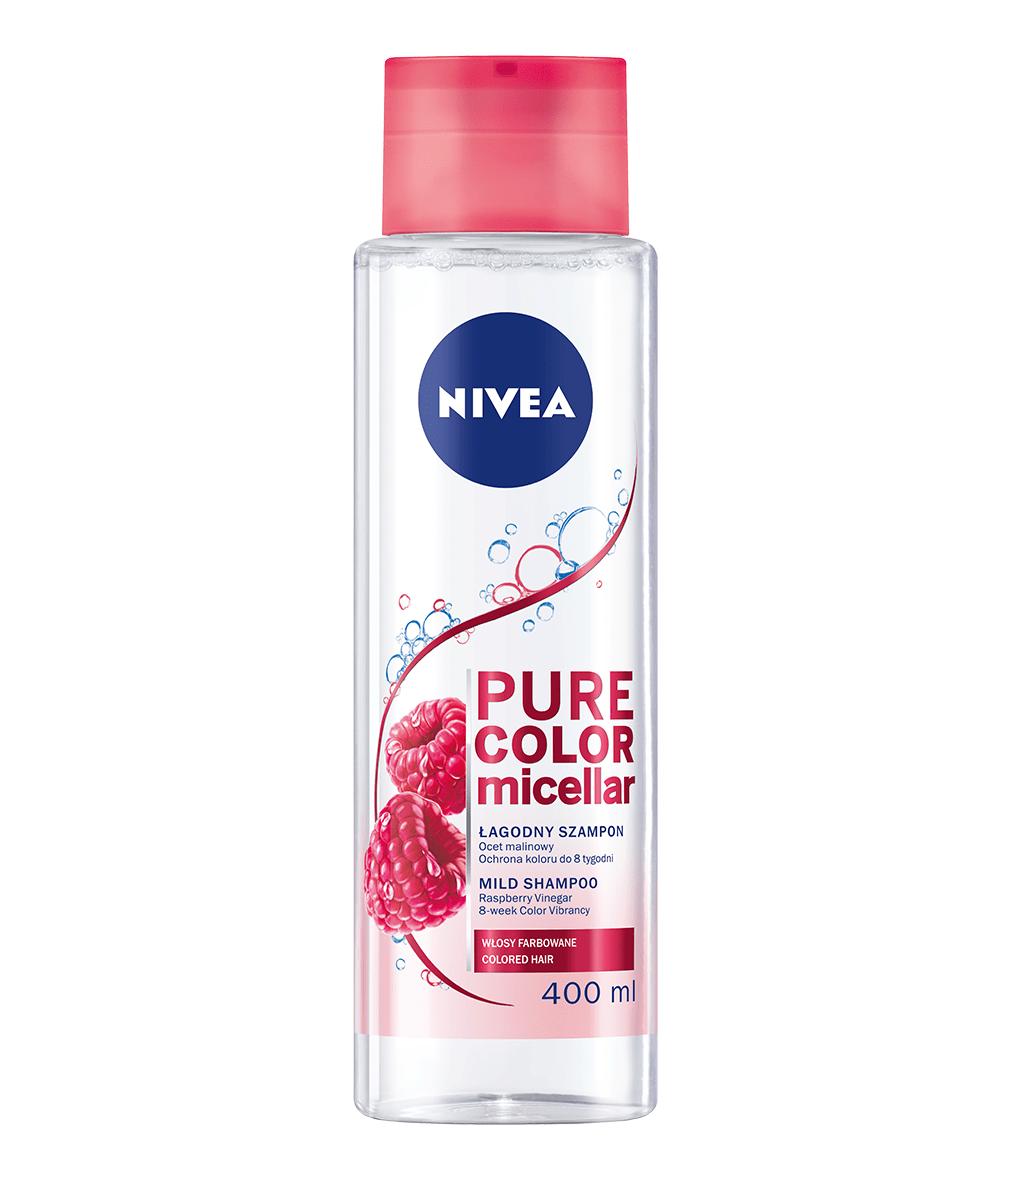 nivea szampon micelarny skład